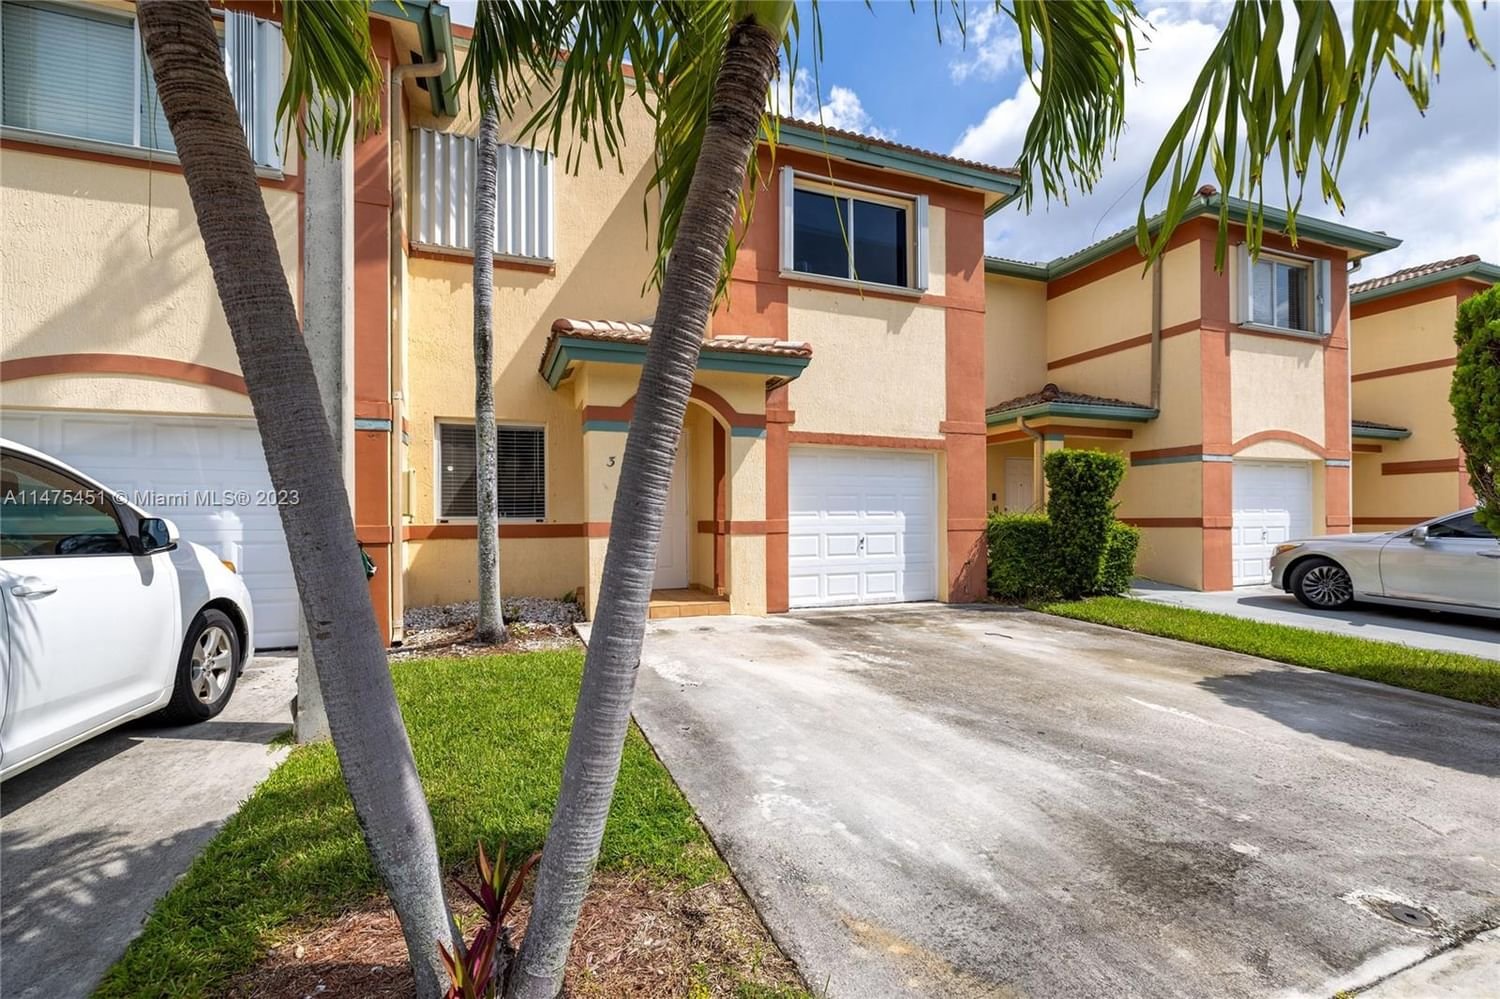 Real estate property located at 3871 147th Ave #3, Miami-Dade County, CRISTAL VILLAS CONDO, Miami, FL